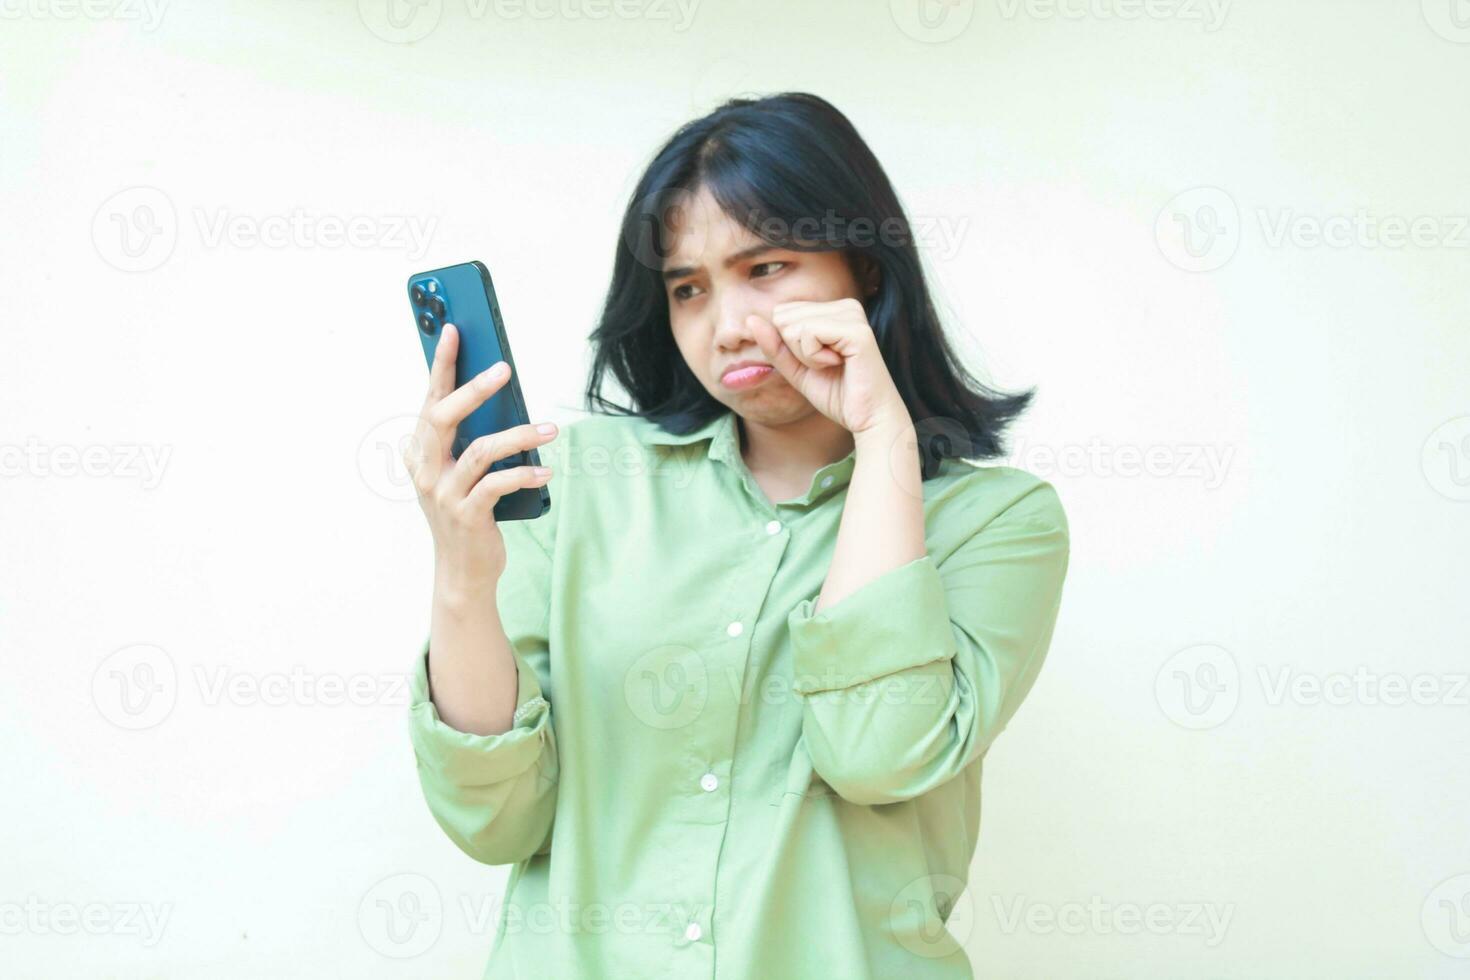 ledsen asiatisk kvinna våtservetter henne tårar efter gråta för använder sig av social media på smartphone håll på händer bär grön överdimensionerad skjorta stående över isolerat bakgrund. mental hälsa begrepp, mobbning foto